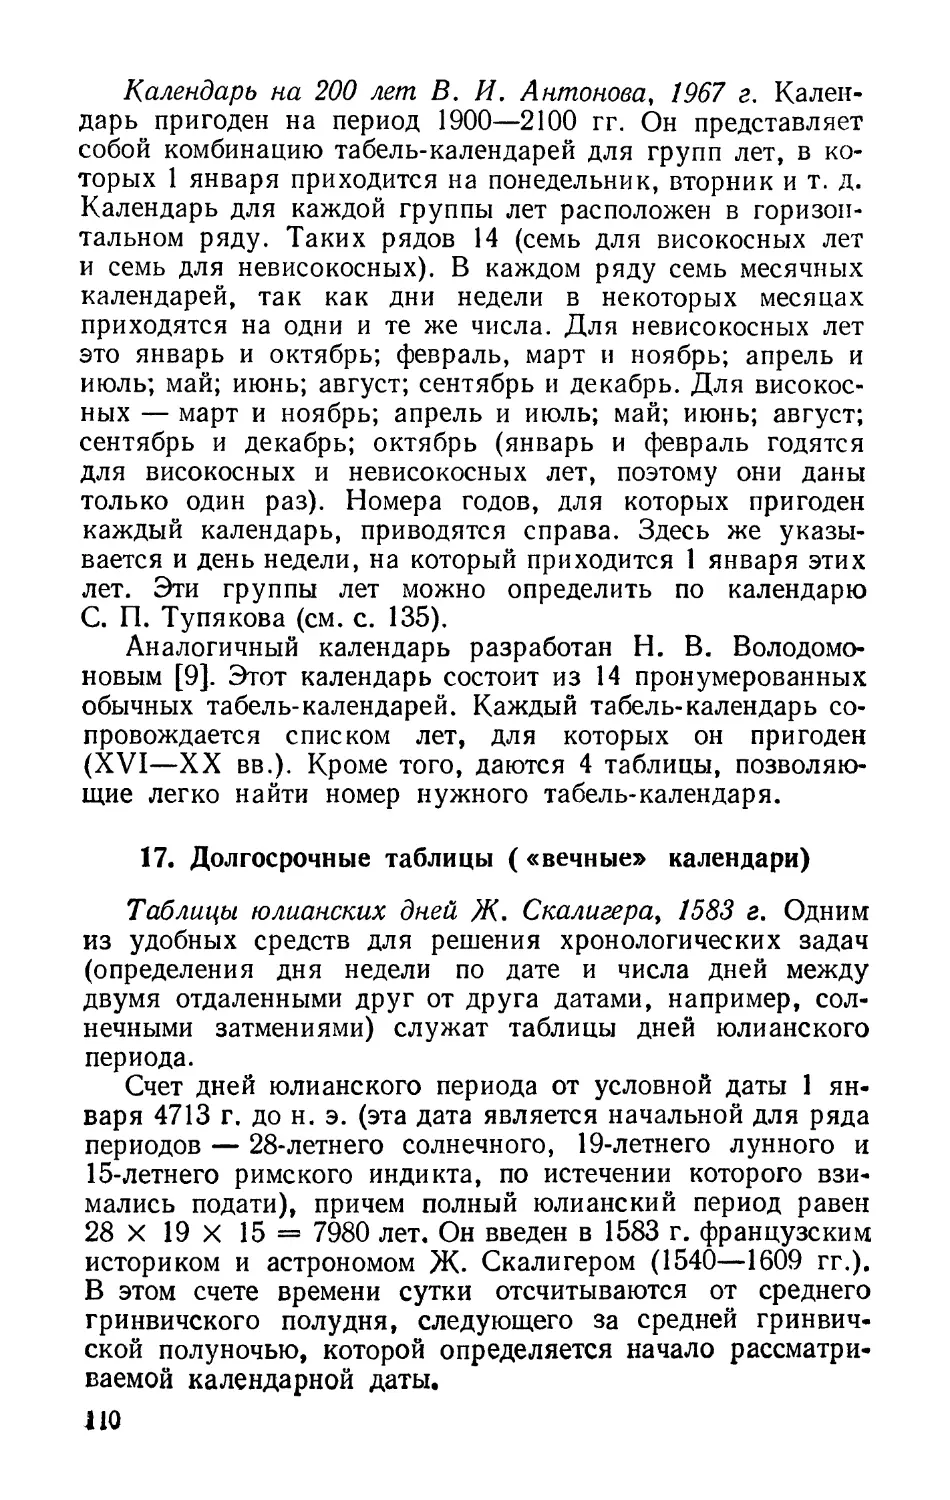 Календарь на 200 лет В. И. Антонова, 1967 г.
Таблицы юлианских дней Ж. Скалигера, 1583 г.